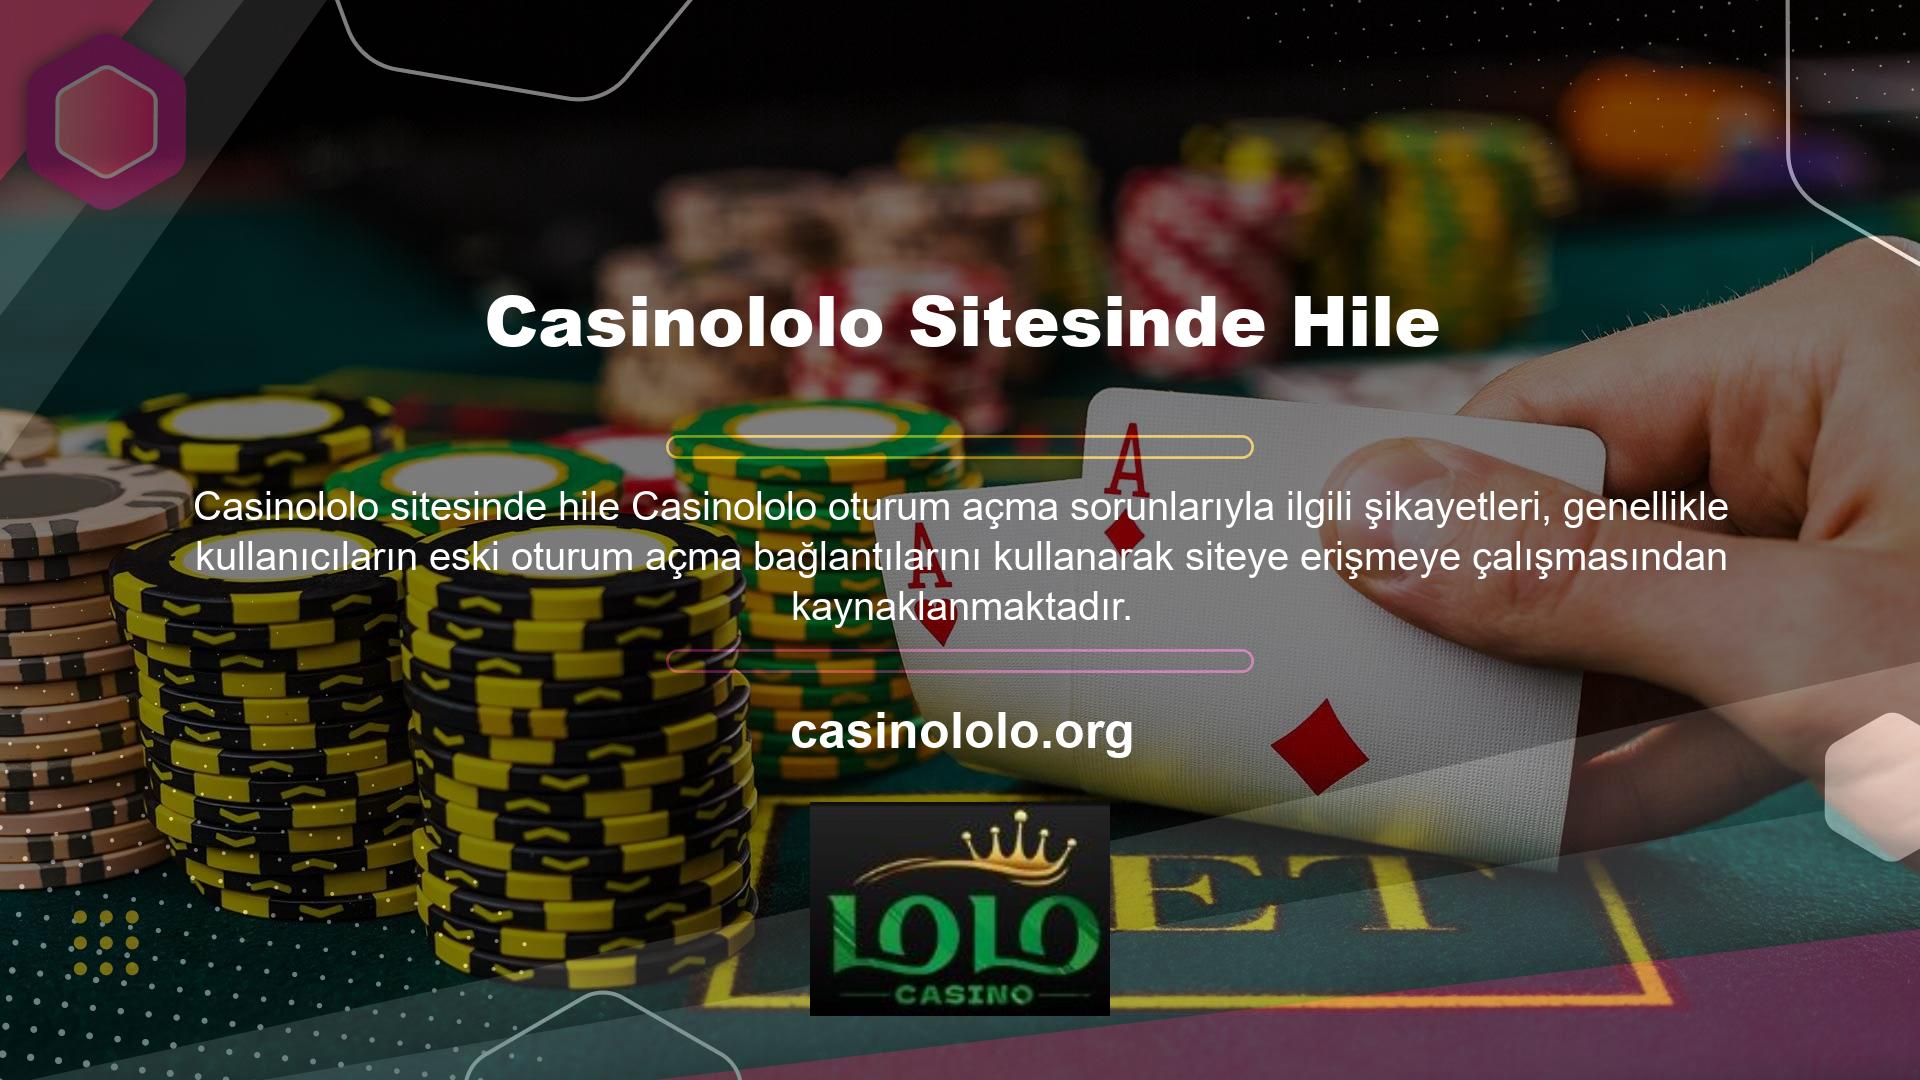 Bir casino sitesi yasa dışı oyunlar içeriyorsa veya şikayet konusu ise araştırılır ve adres kapatılır